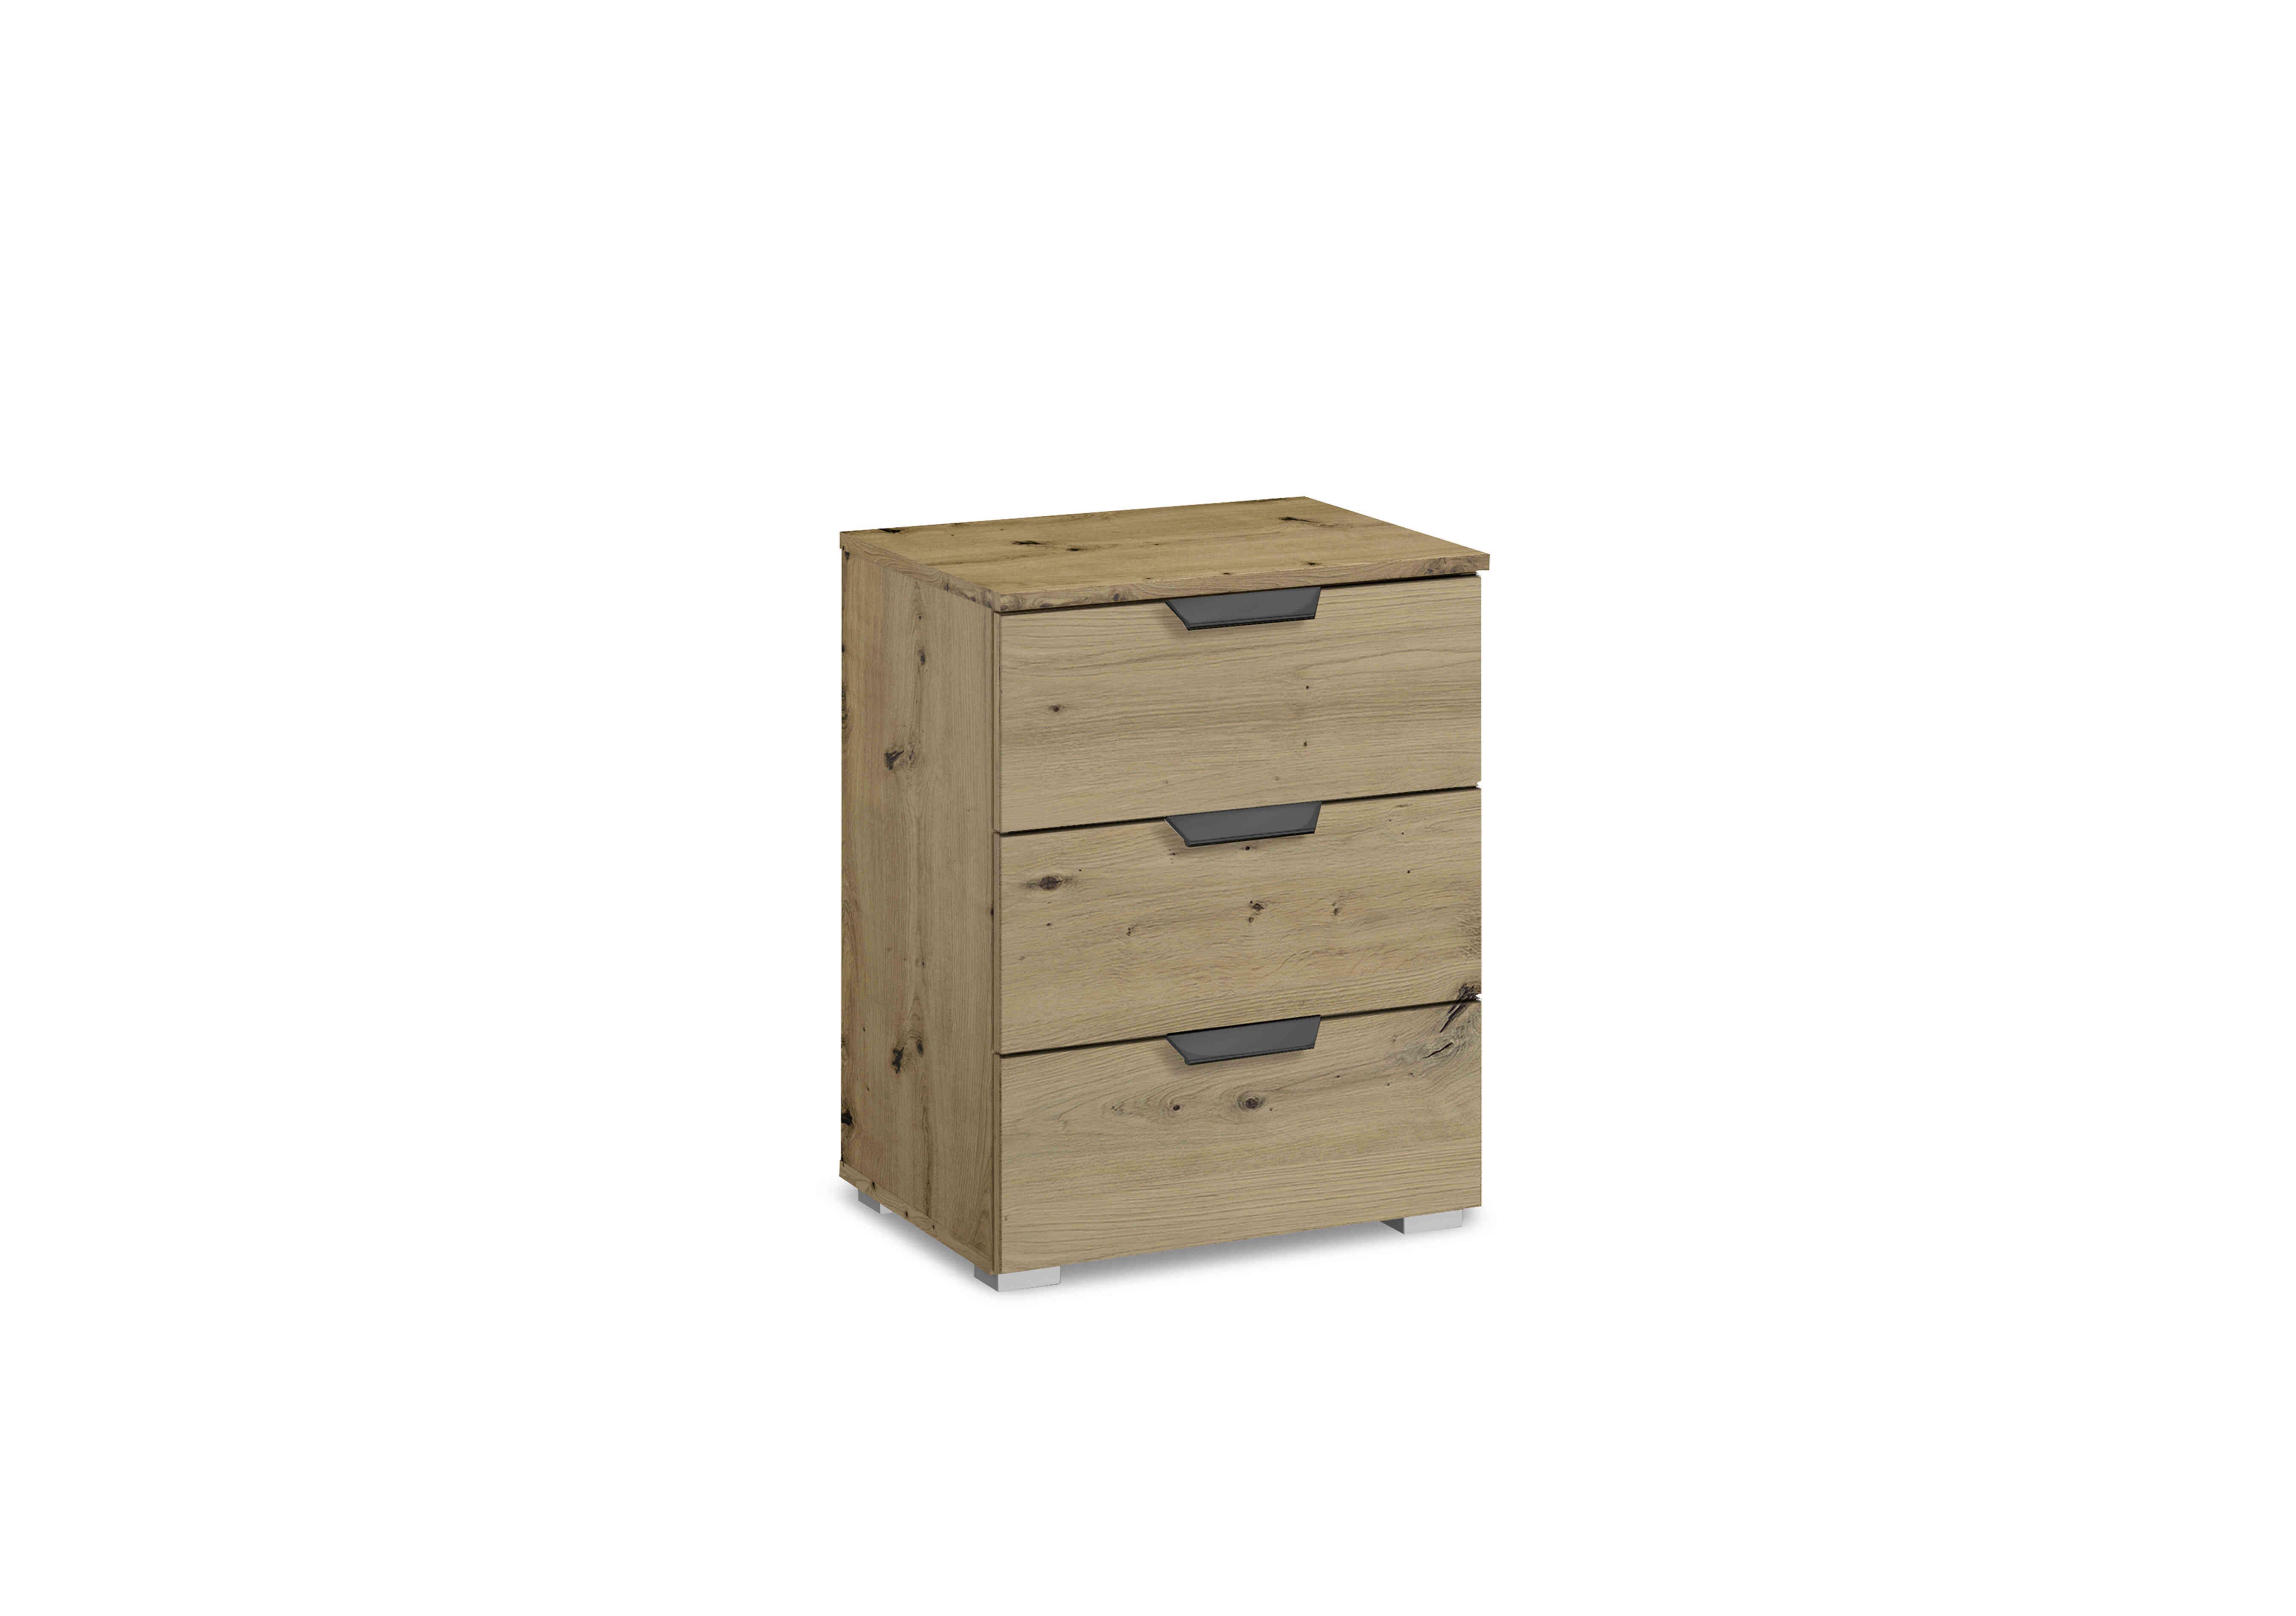 Leon 3 Drawer Bedside Cabinet in Ad64w Art Oak Drs-Art Oak Carc on Furniture Village